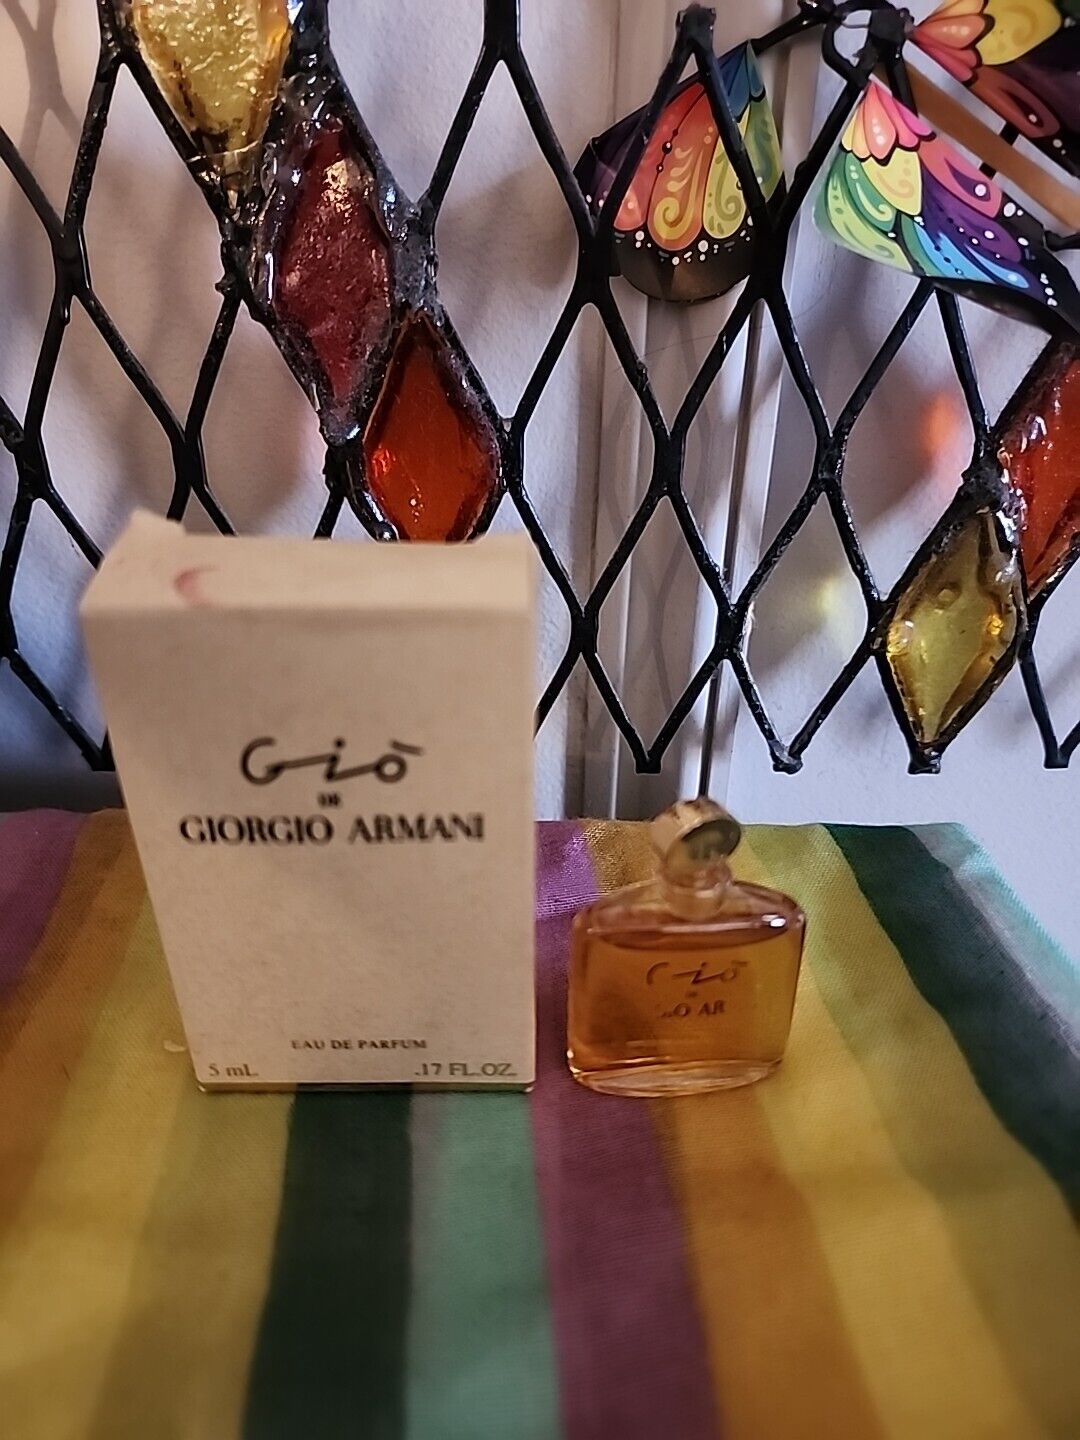 Gio De Giorgio Armani Vintage Perfume Mini